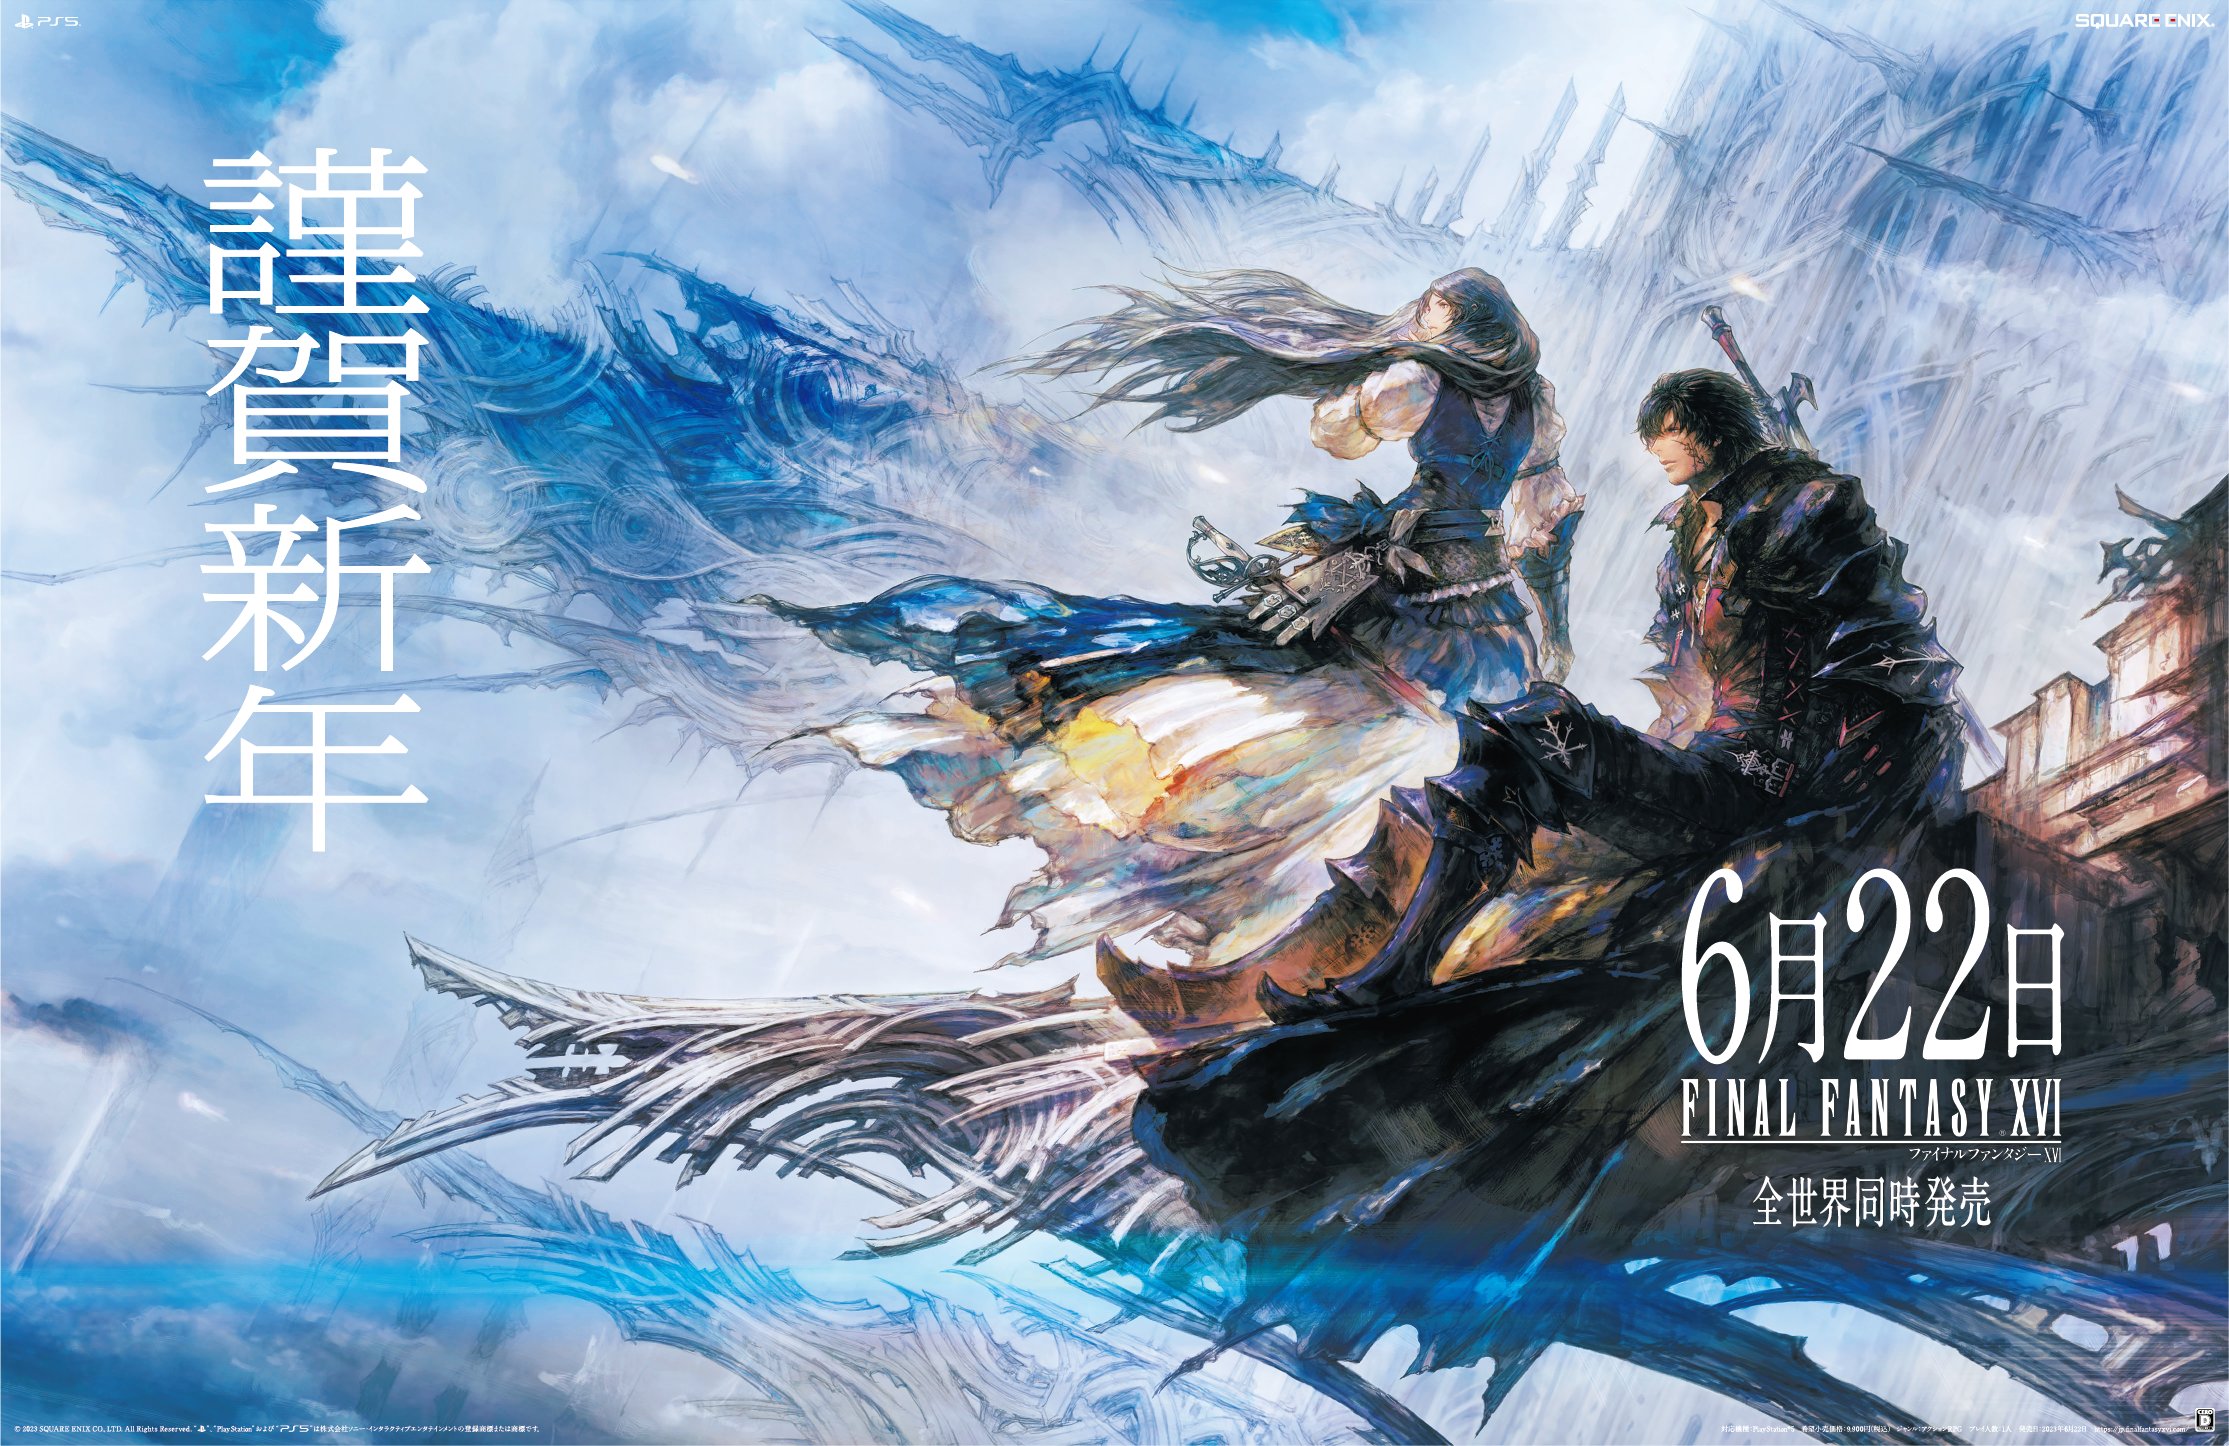 #Gold-Meldung: Der Veröffentlichung von Final Fantasy XVI im Juni steht nichts mehr im Wege